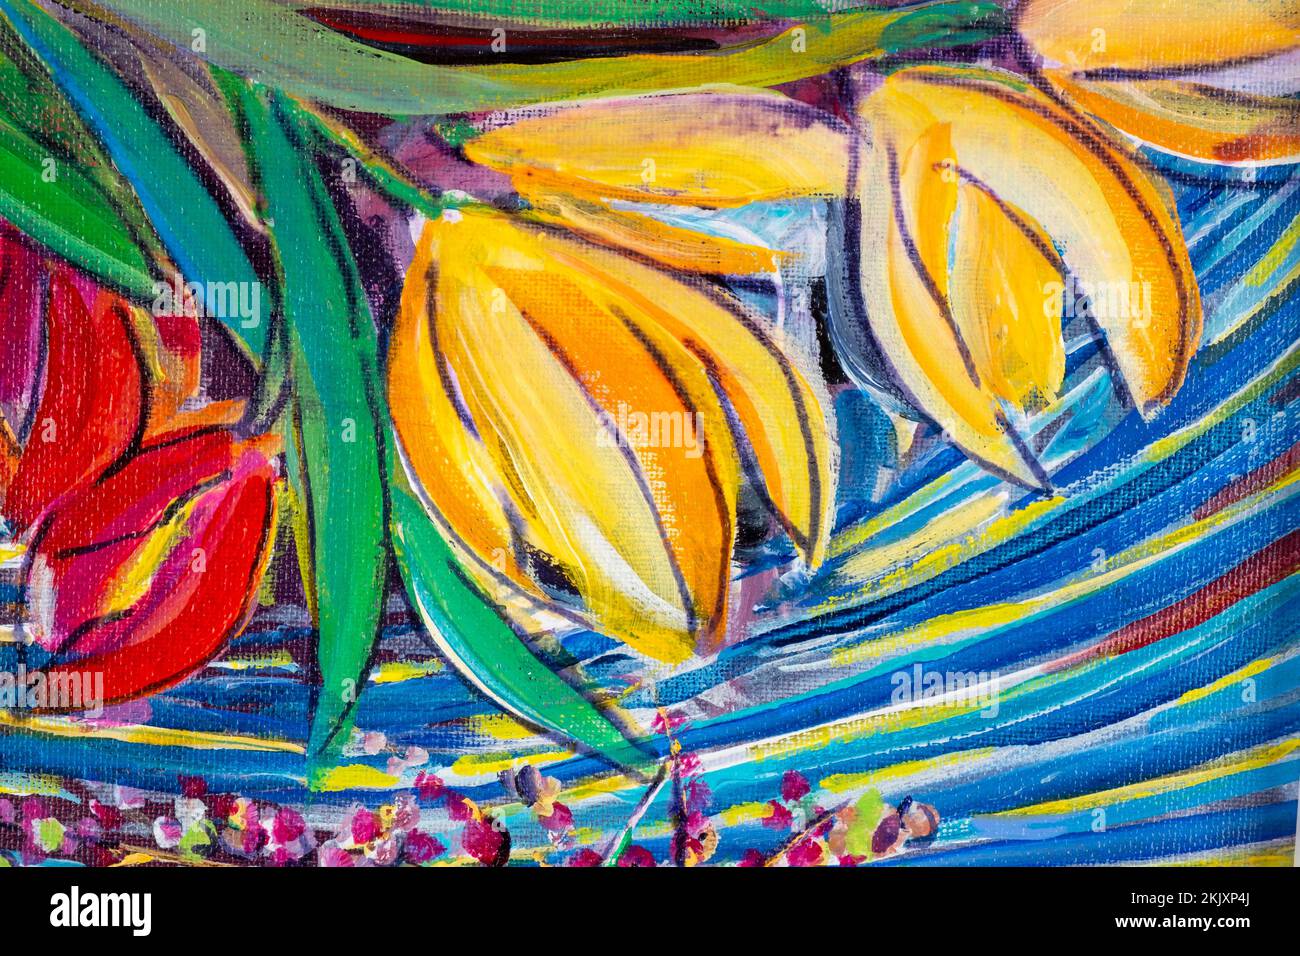 Peinture acrylique d'origine multicolore et dynamique, gros plan sur les travaux de pinceau et les textures de toile. Tulipes, fleurs coupées. Banque D'Images